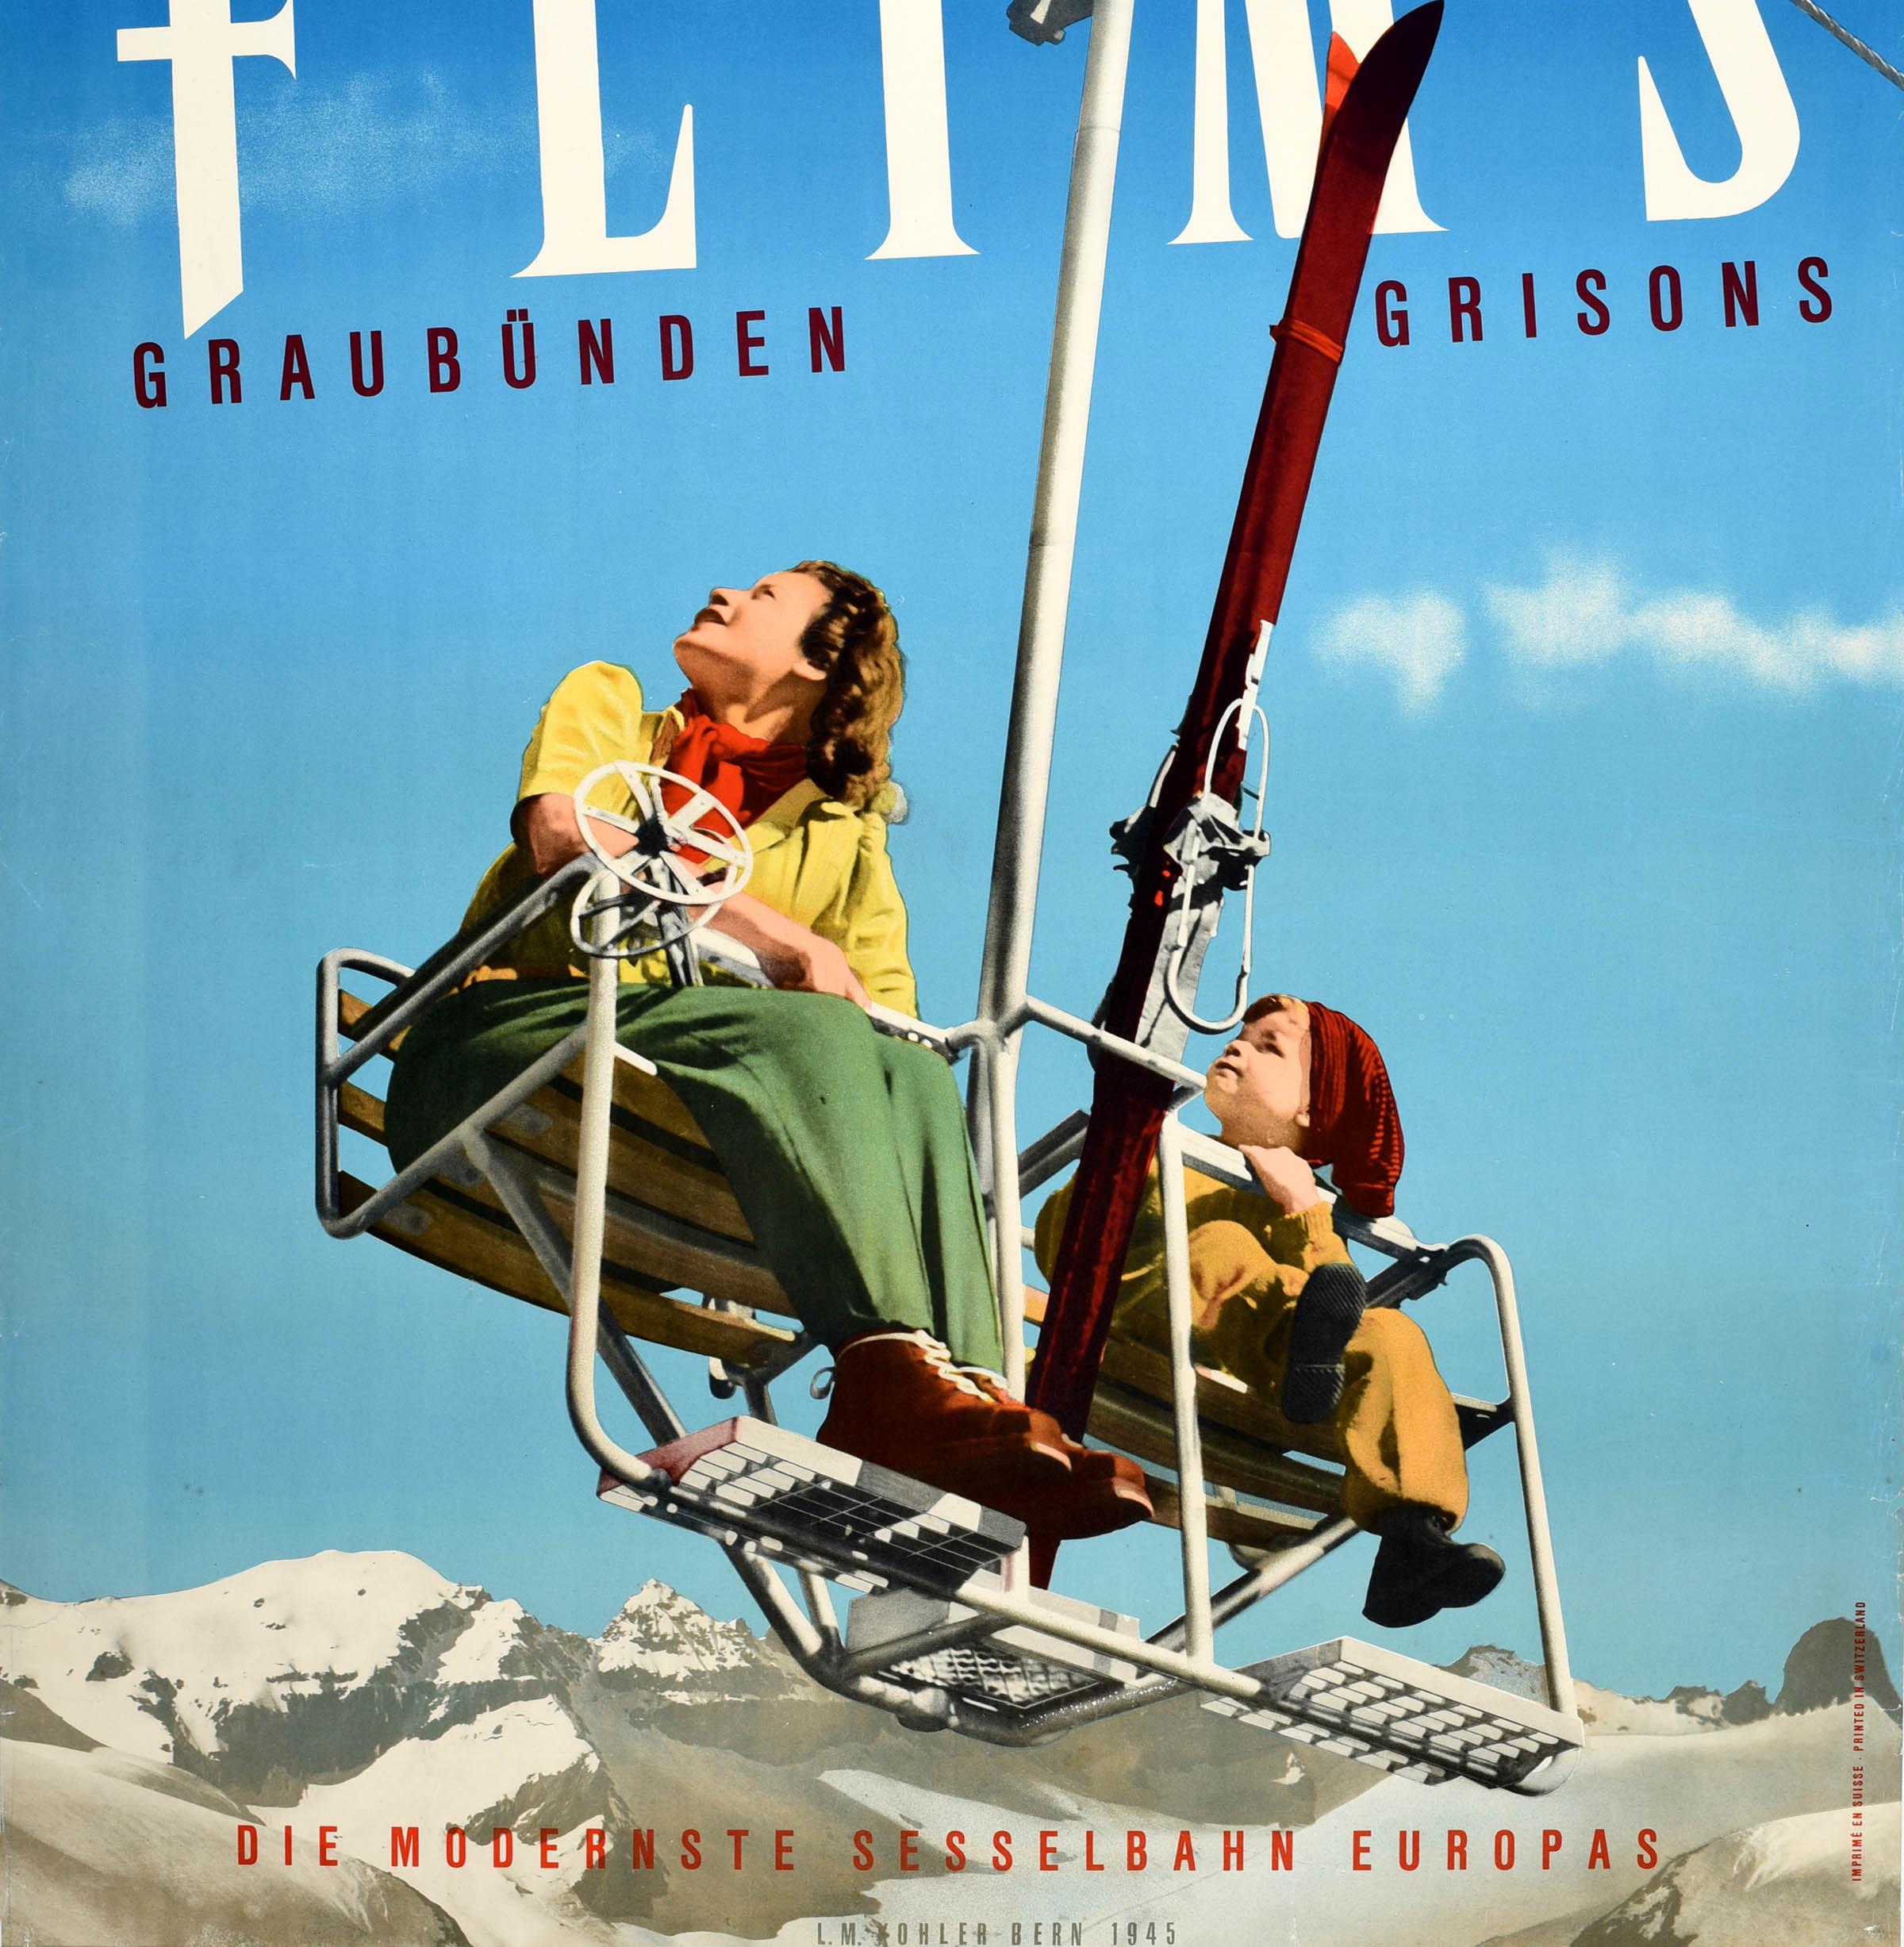 Original Vintage Winter Travel Ski Poster Flims Graubunden Grisons Switzerland - Blue Print by Unknown